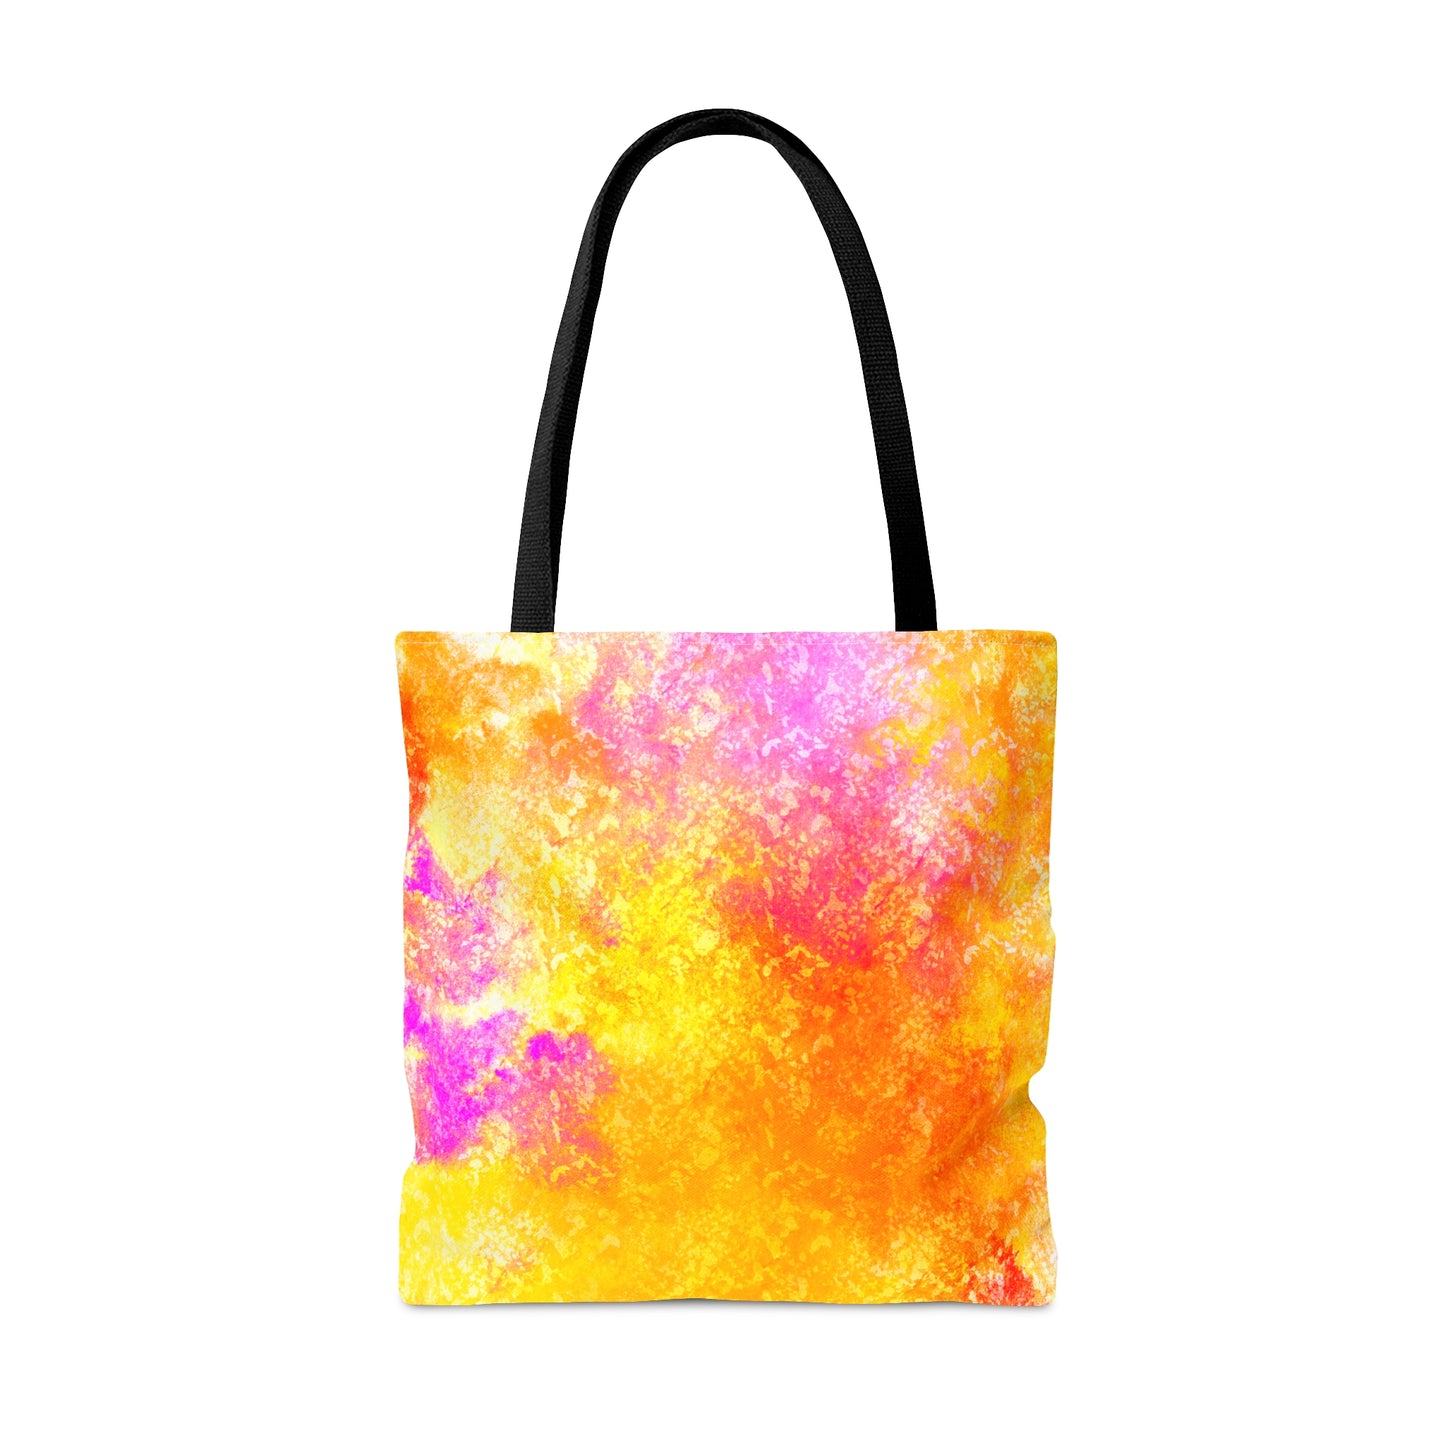 Splash of Color Tote Bag